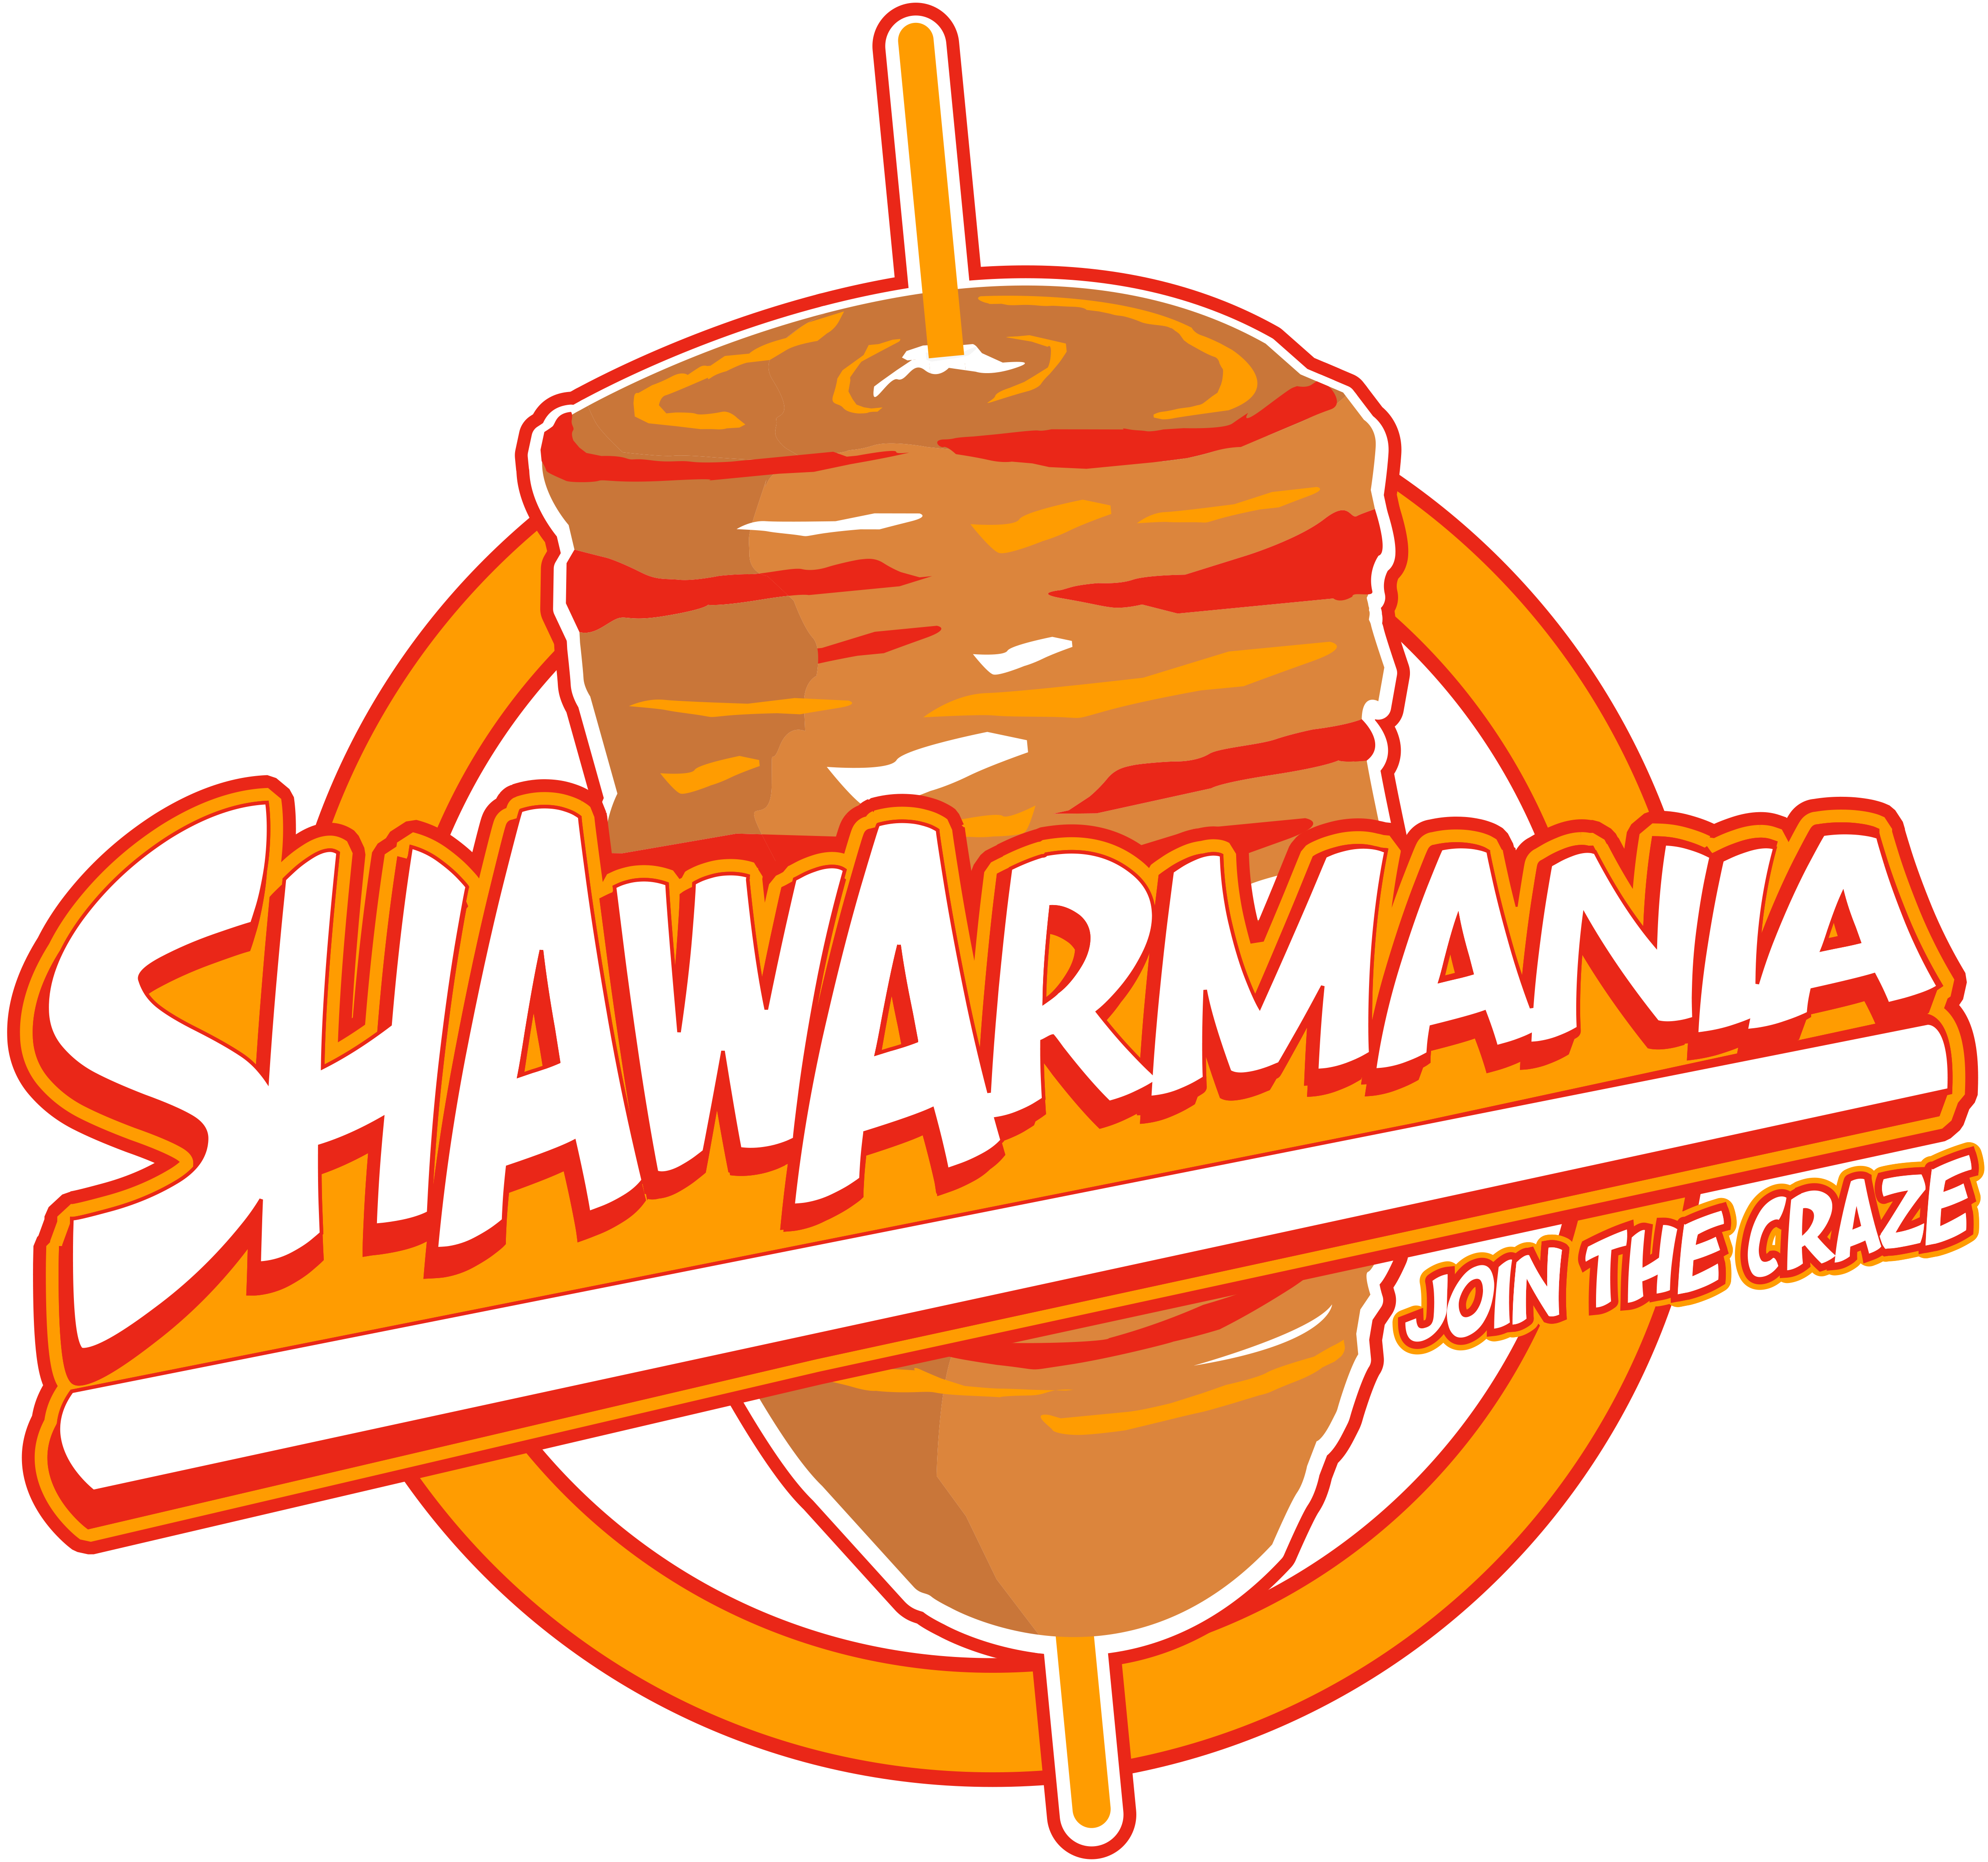 Shawarmania